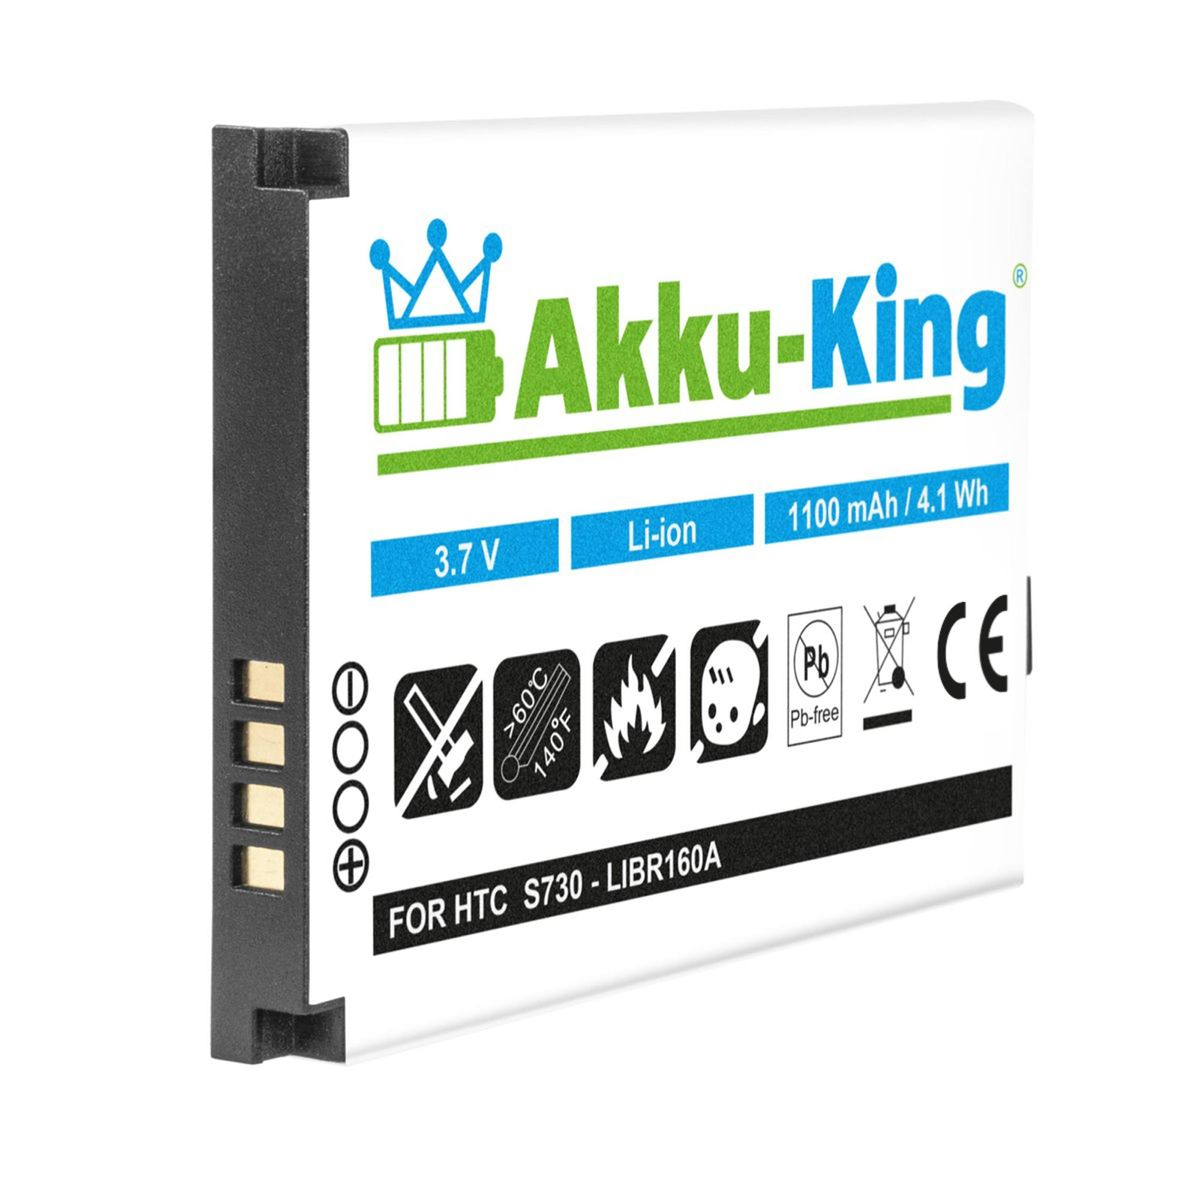 mit Handy-Akku, Li-Ion AKKU-KING Volt, S180 BA 3.7 1100mAh kompatibel HTC Akku